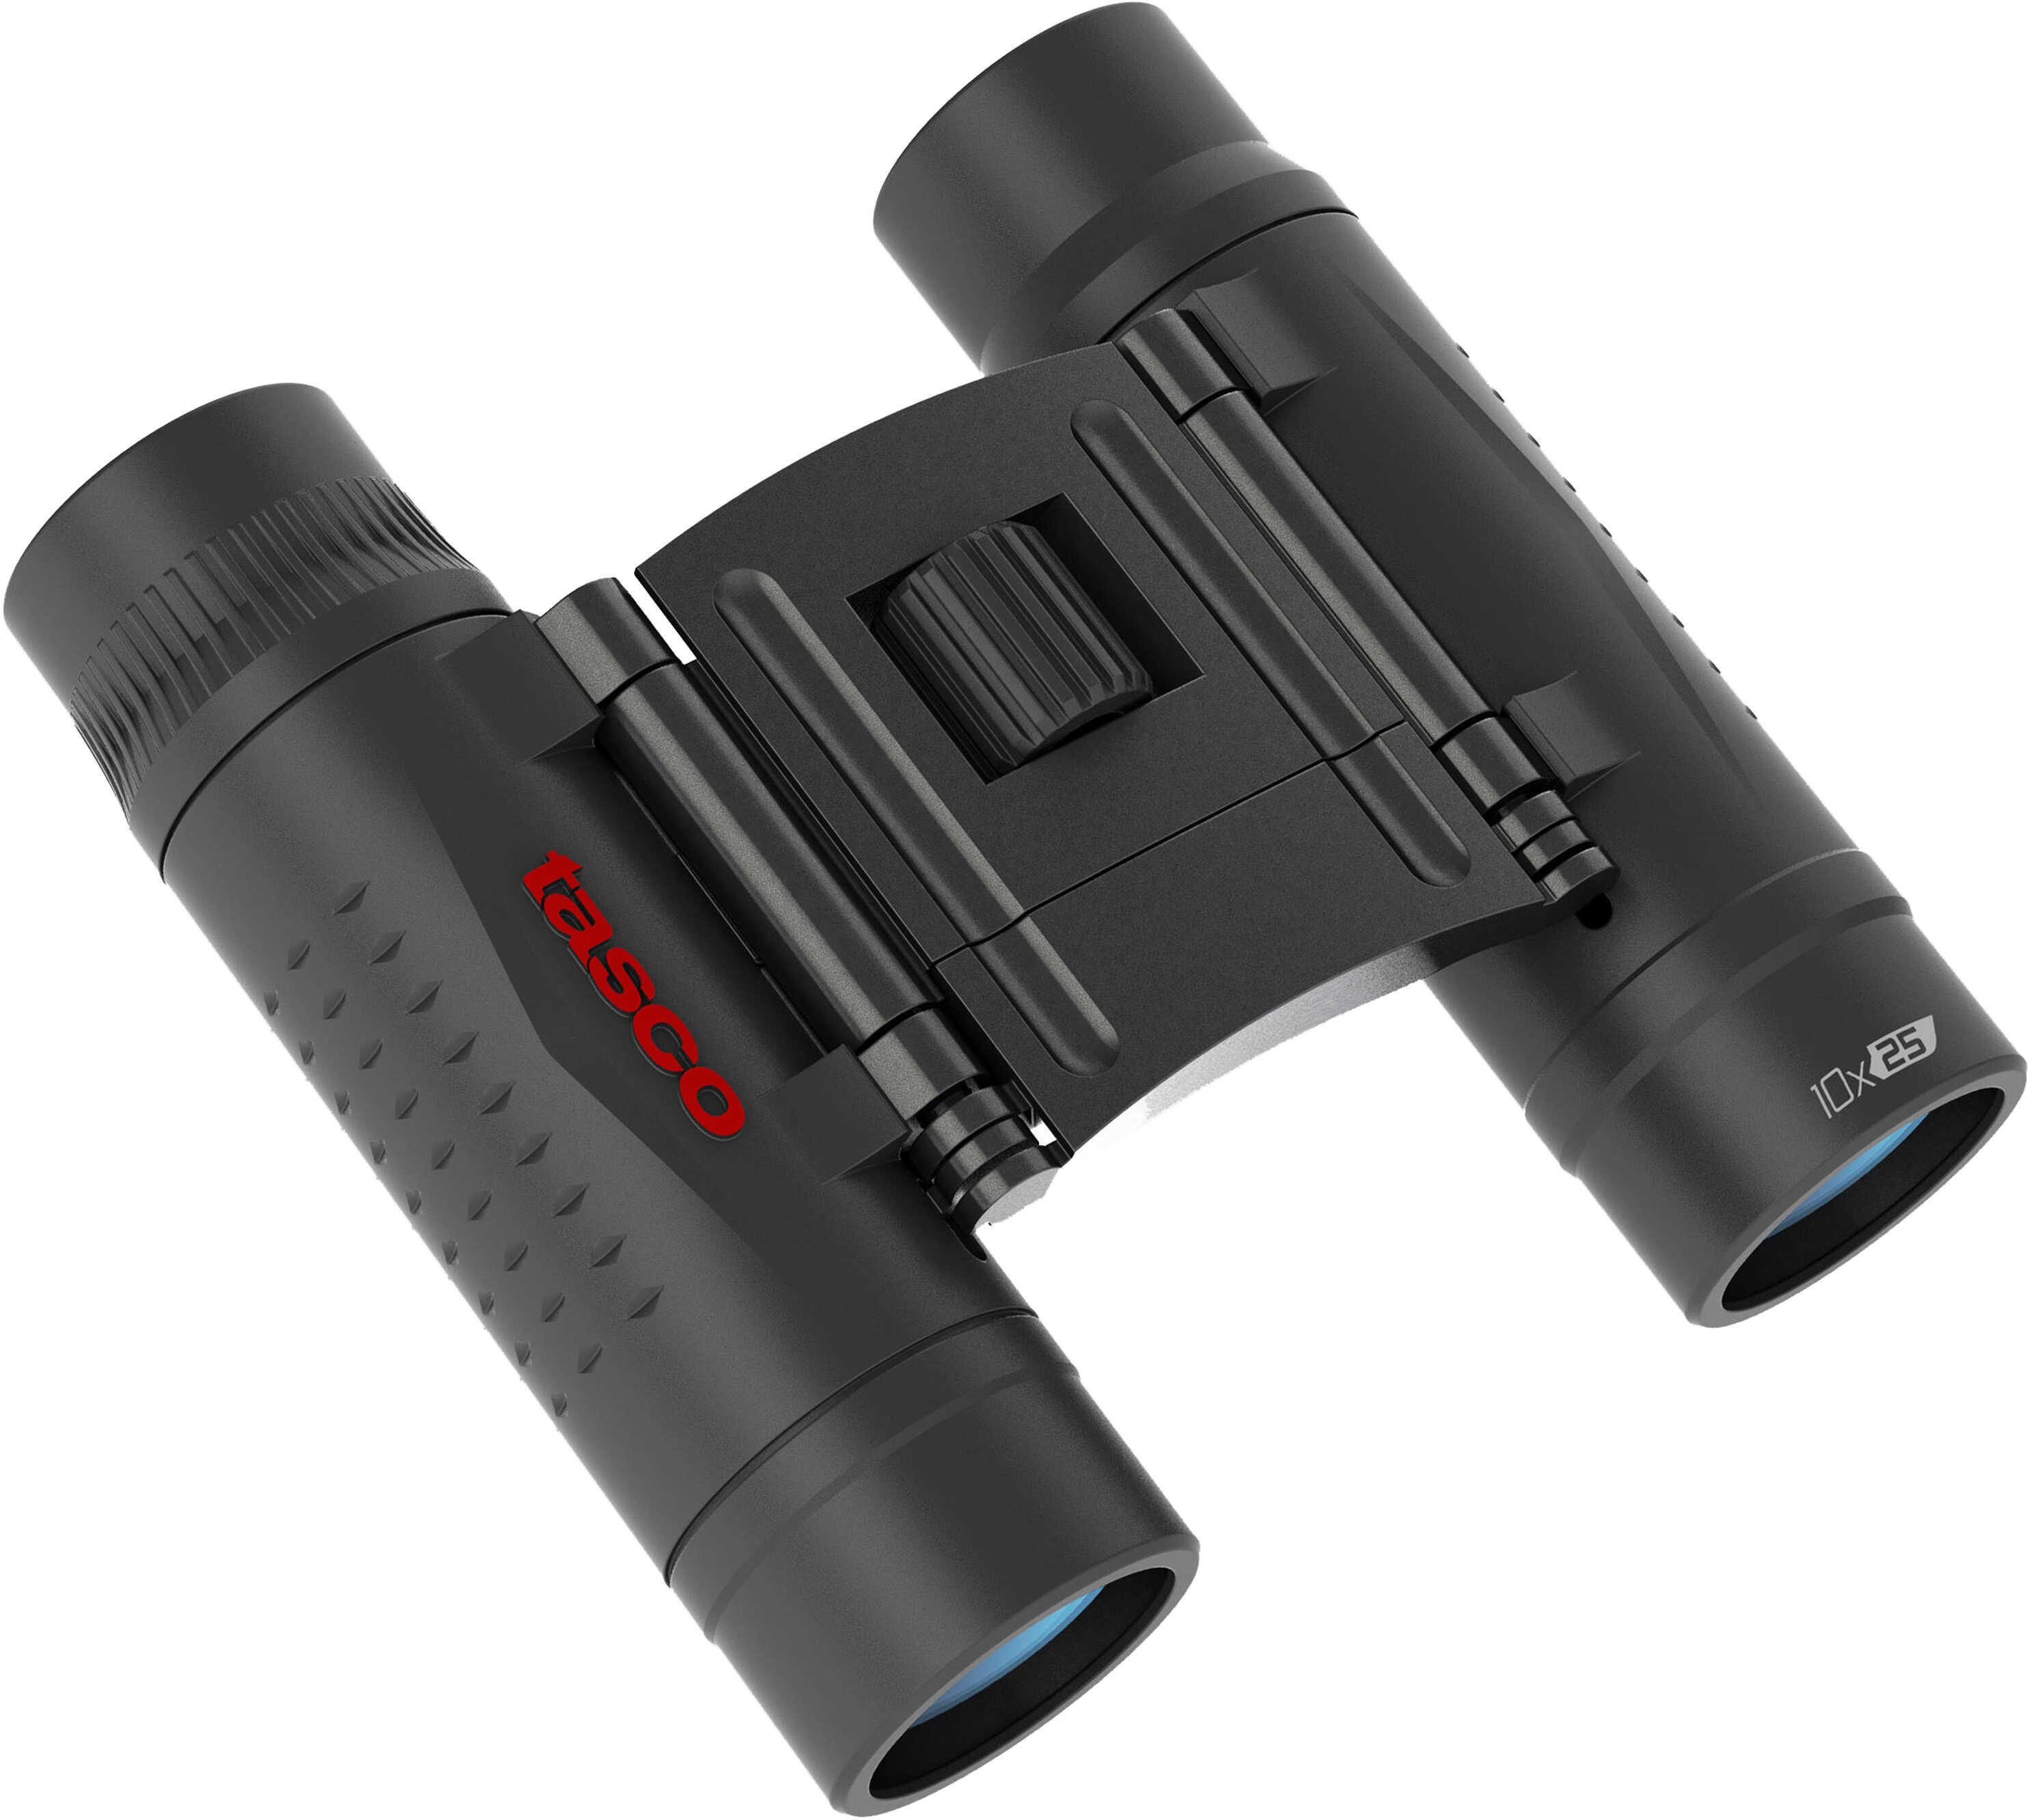 Tasco Essentials Binoculars 10x25mm  Model: 168125